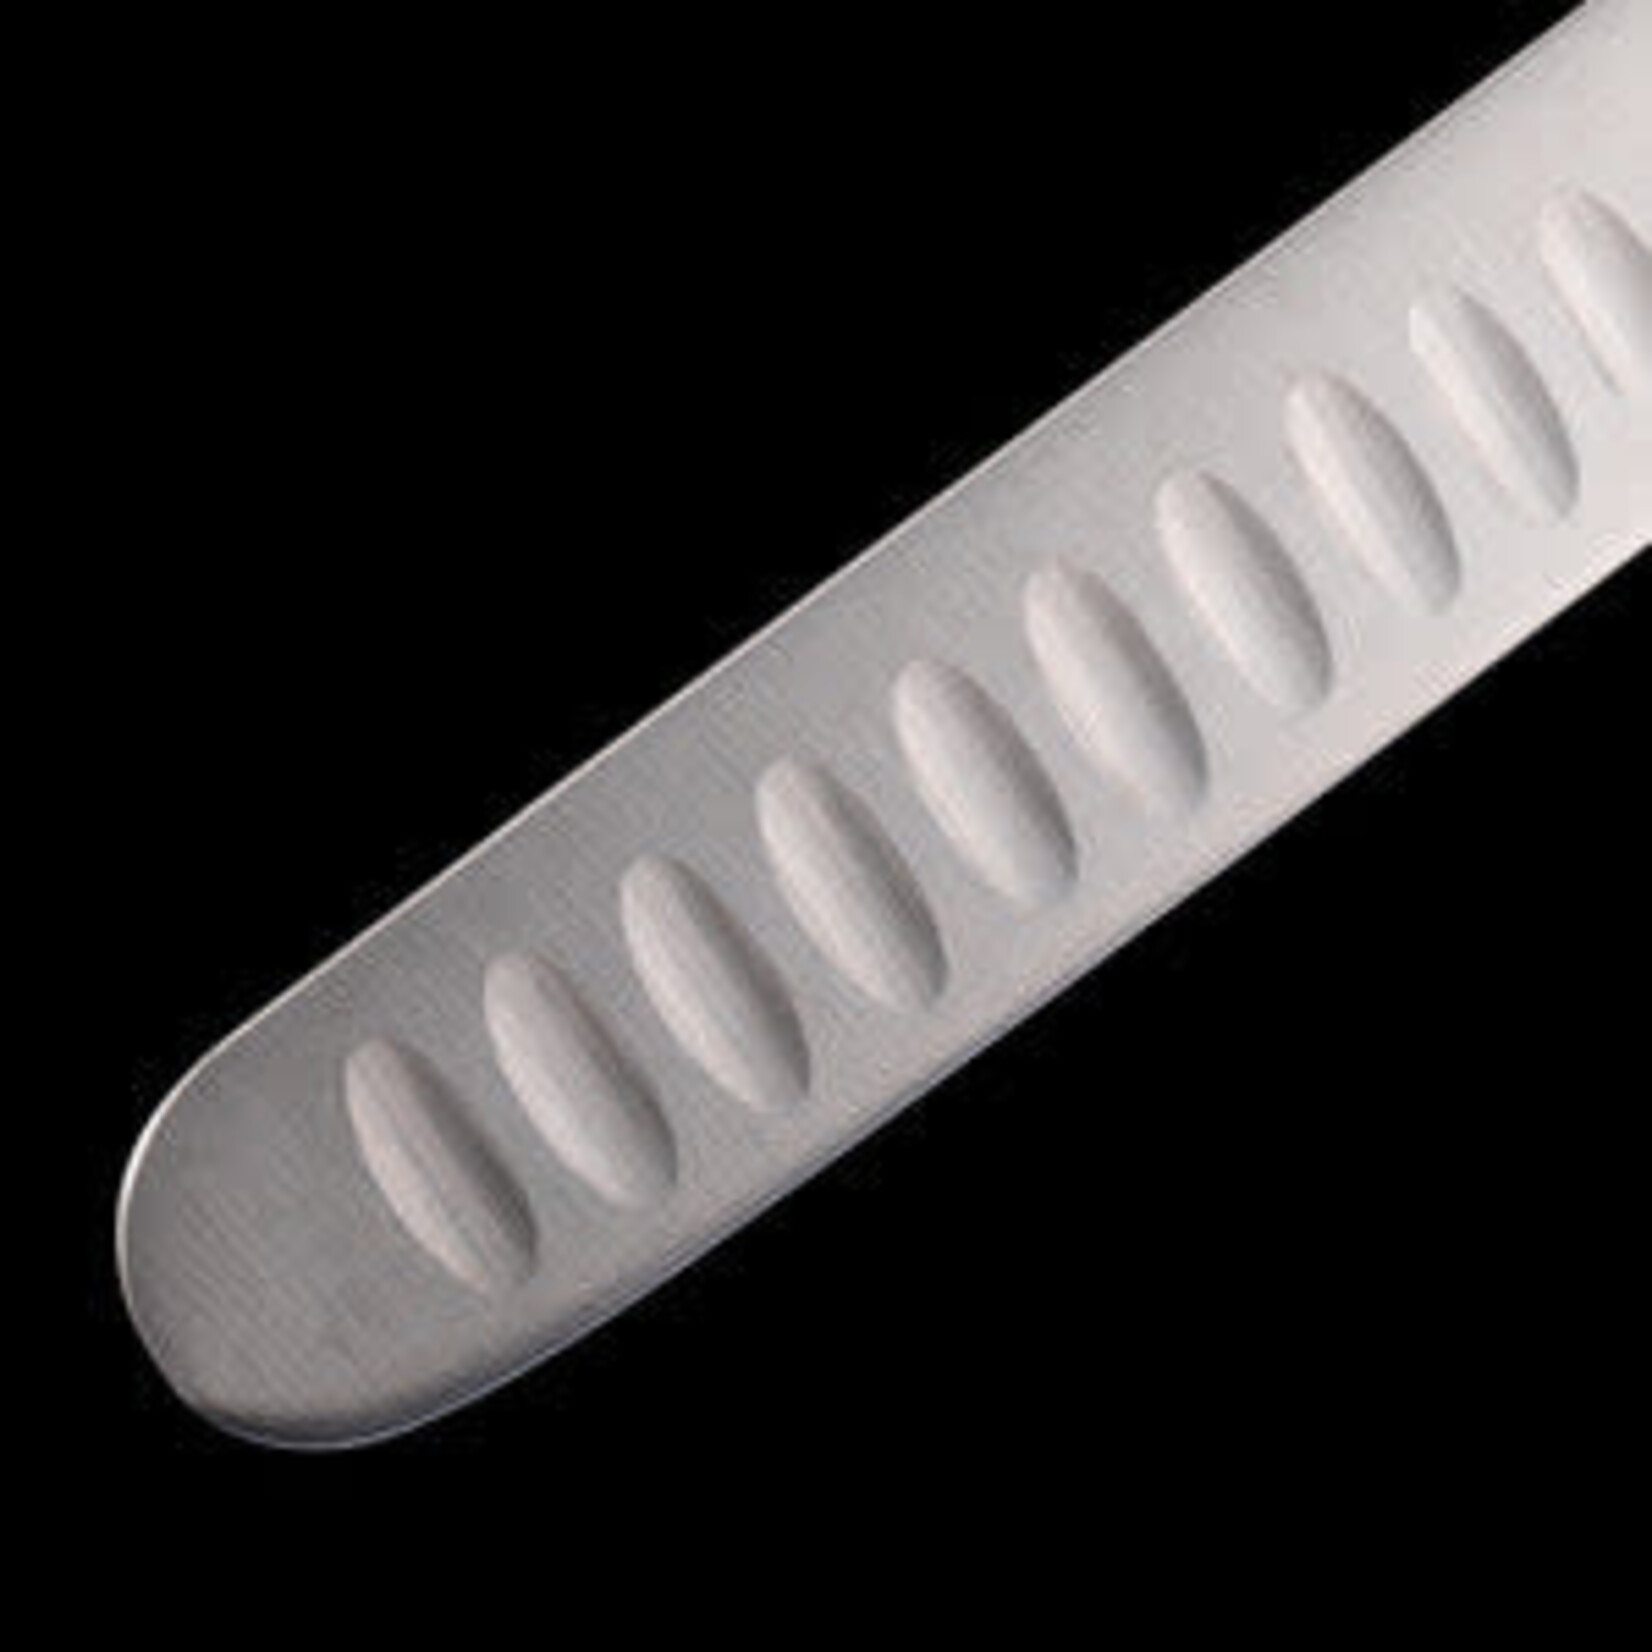 Messermeister Pro Series 10 Inch Kullenschliff Slicer - Round Tip with Polypropylene Handle